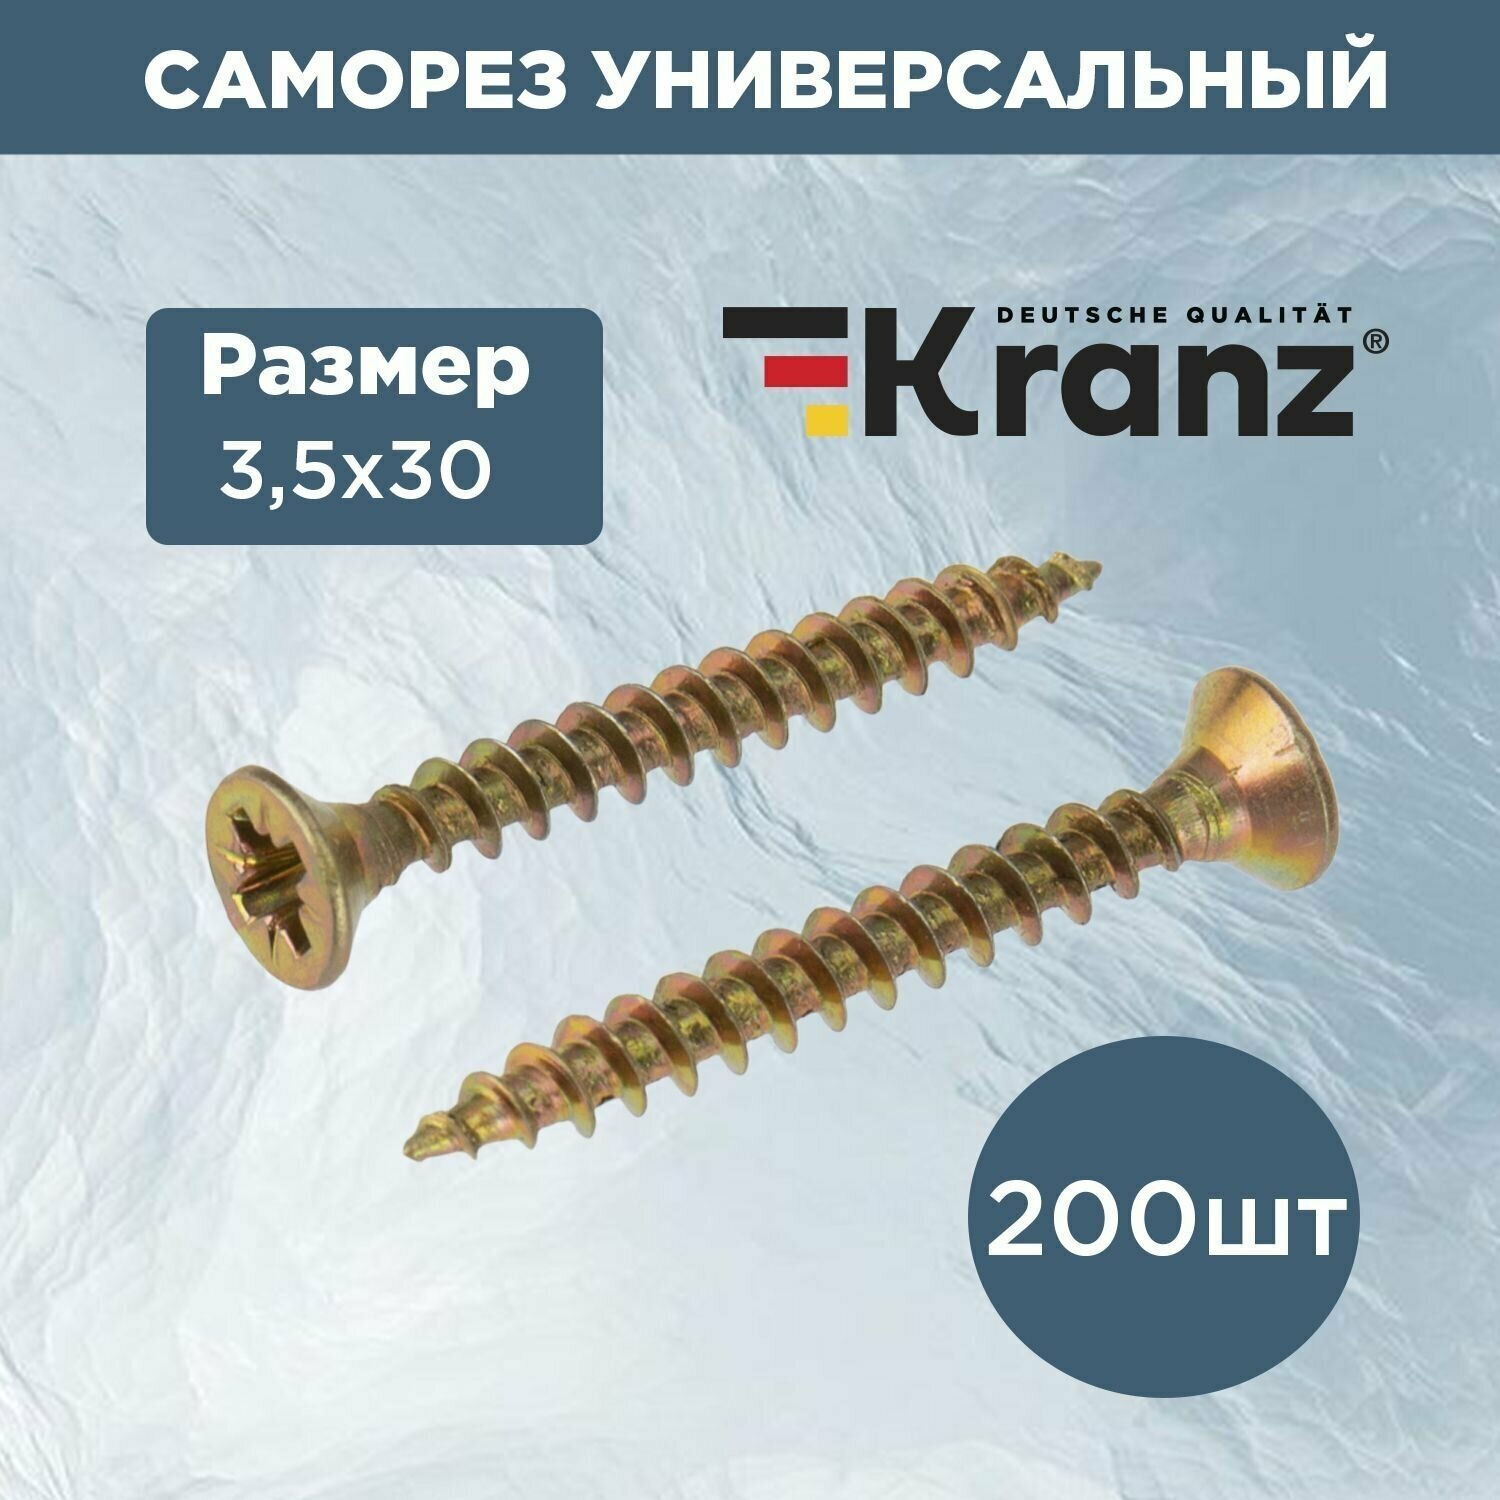 Саморез универсальный для дерева и металла KRANZ 3.5х30 с противокоррозионным покрытием из желтого цинка короб 200 шт.